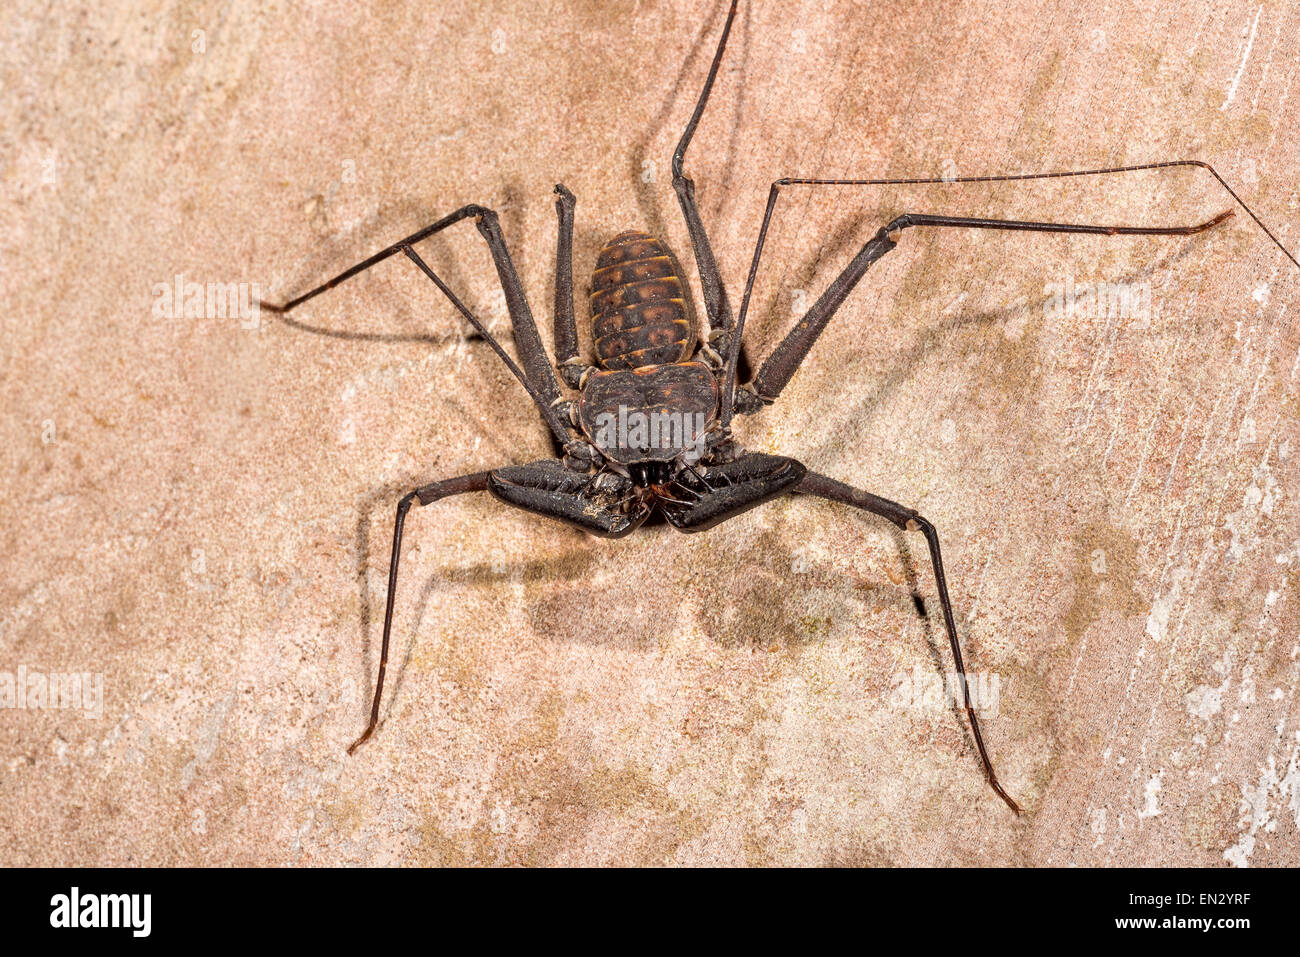 Amblypygi - fouet-araignées COSTA RICA la faune araignées scorpions whip wip sans queue animal invertébré arachnides nuit un nocturne Banque D'Images